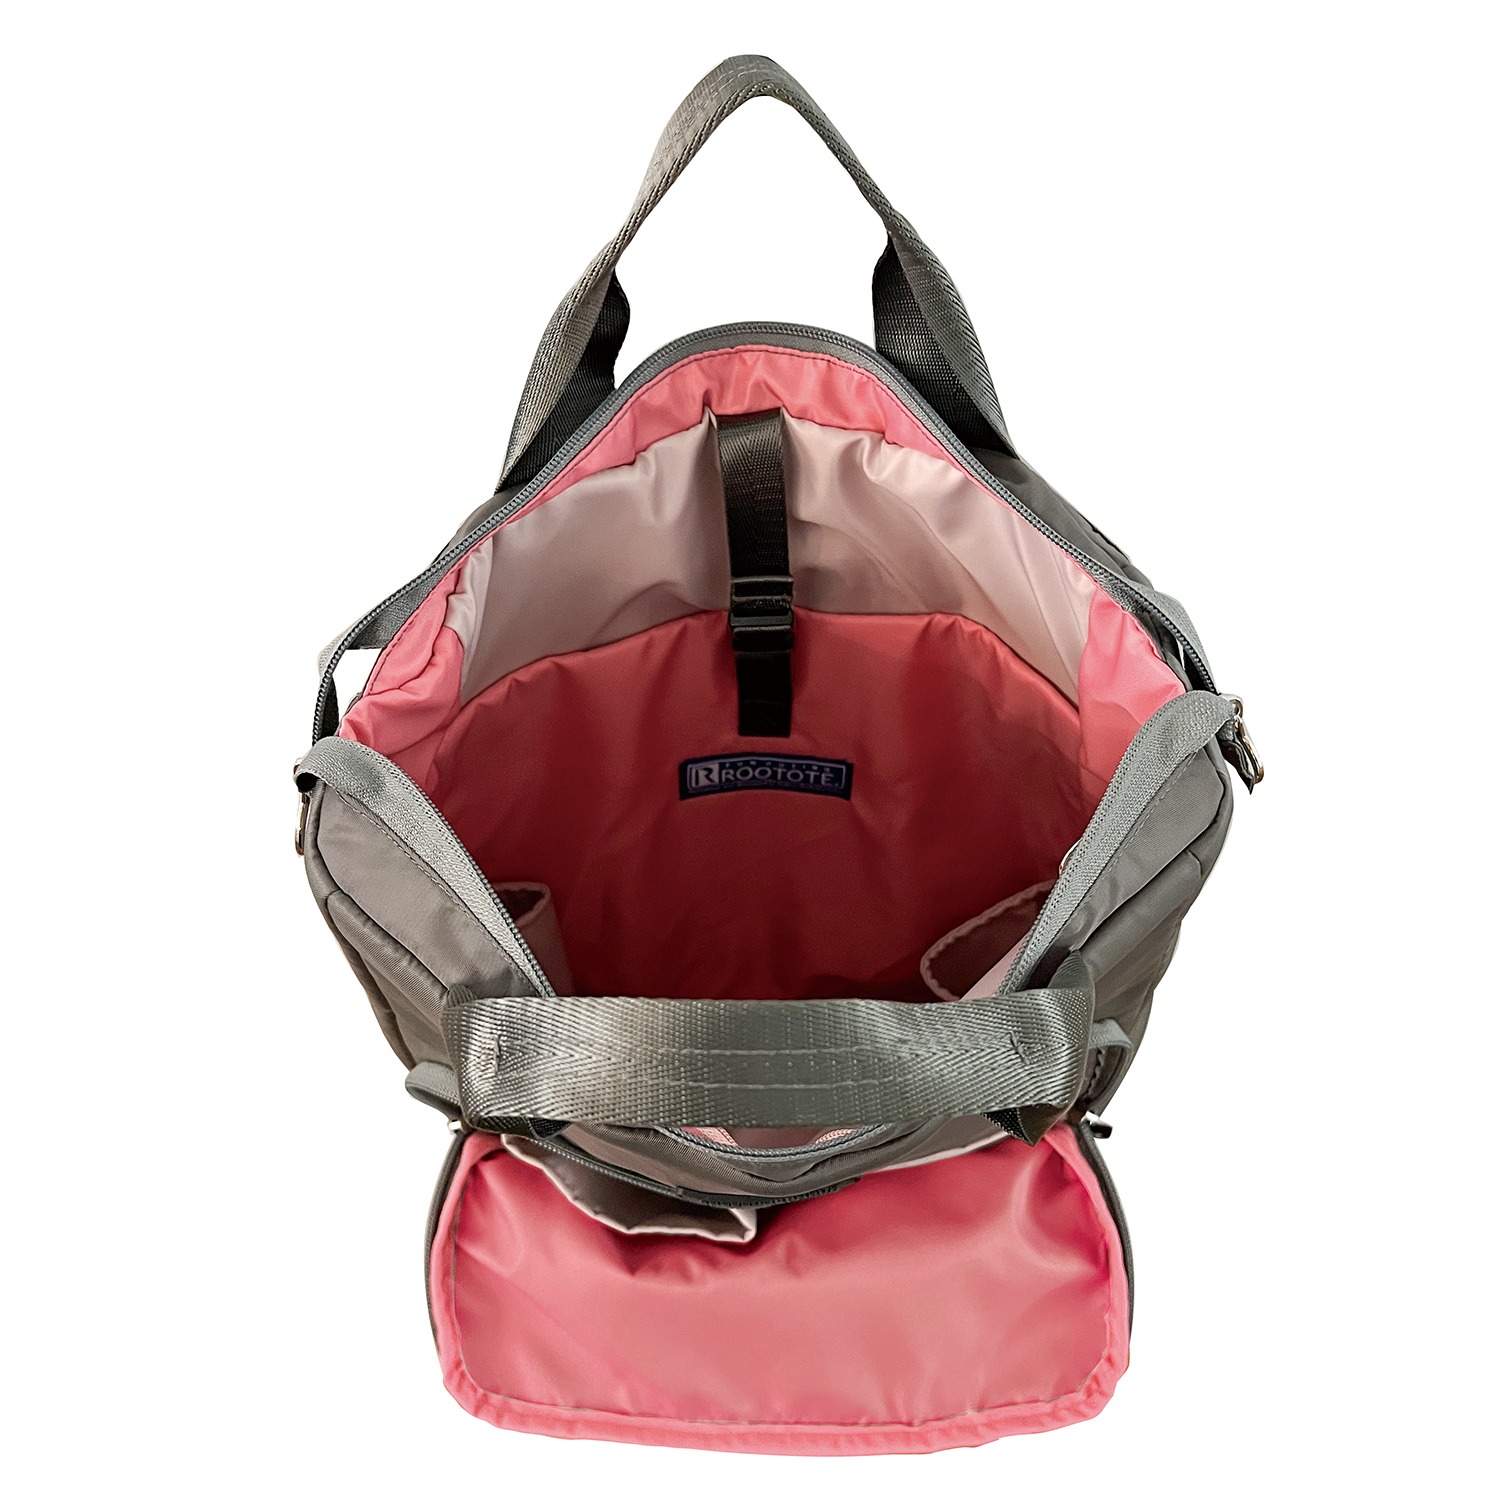 ルートート ハッピーな色彩と 使いやすさにこだわった 働く女性のための ２ウェイトートバッグ